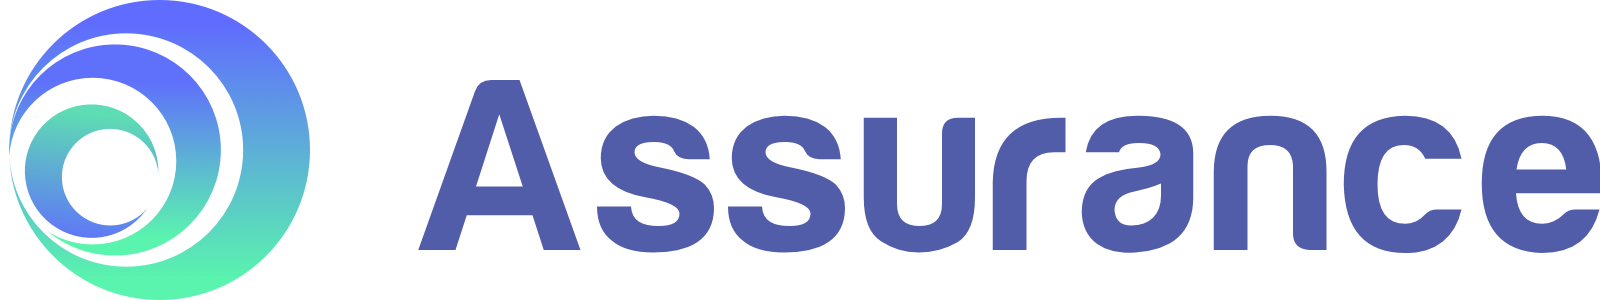 Assurance business logo